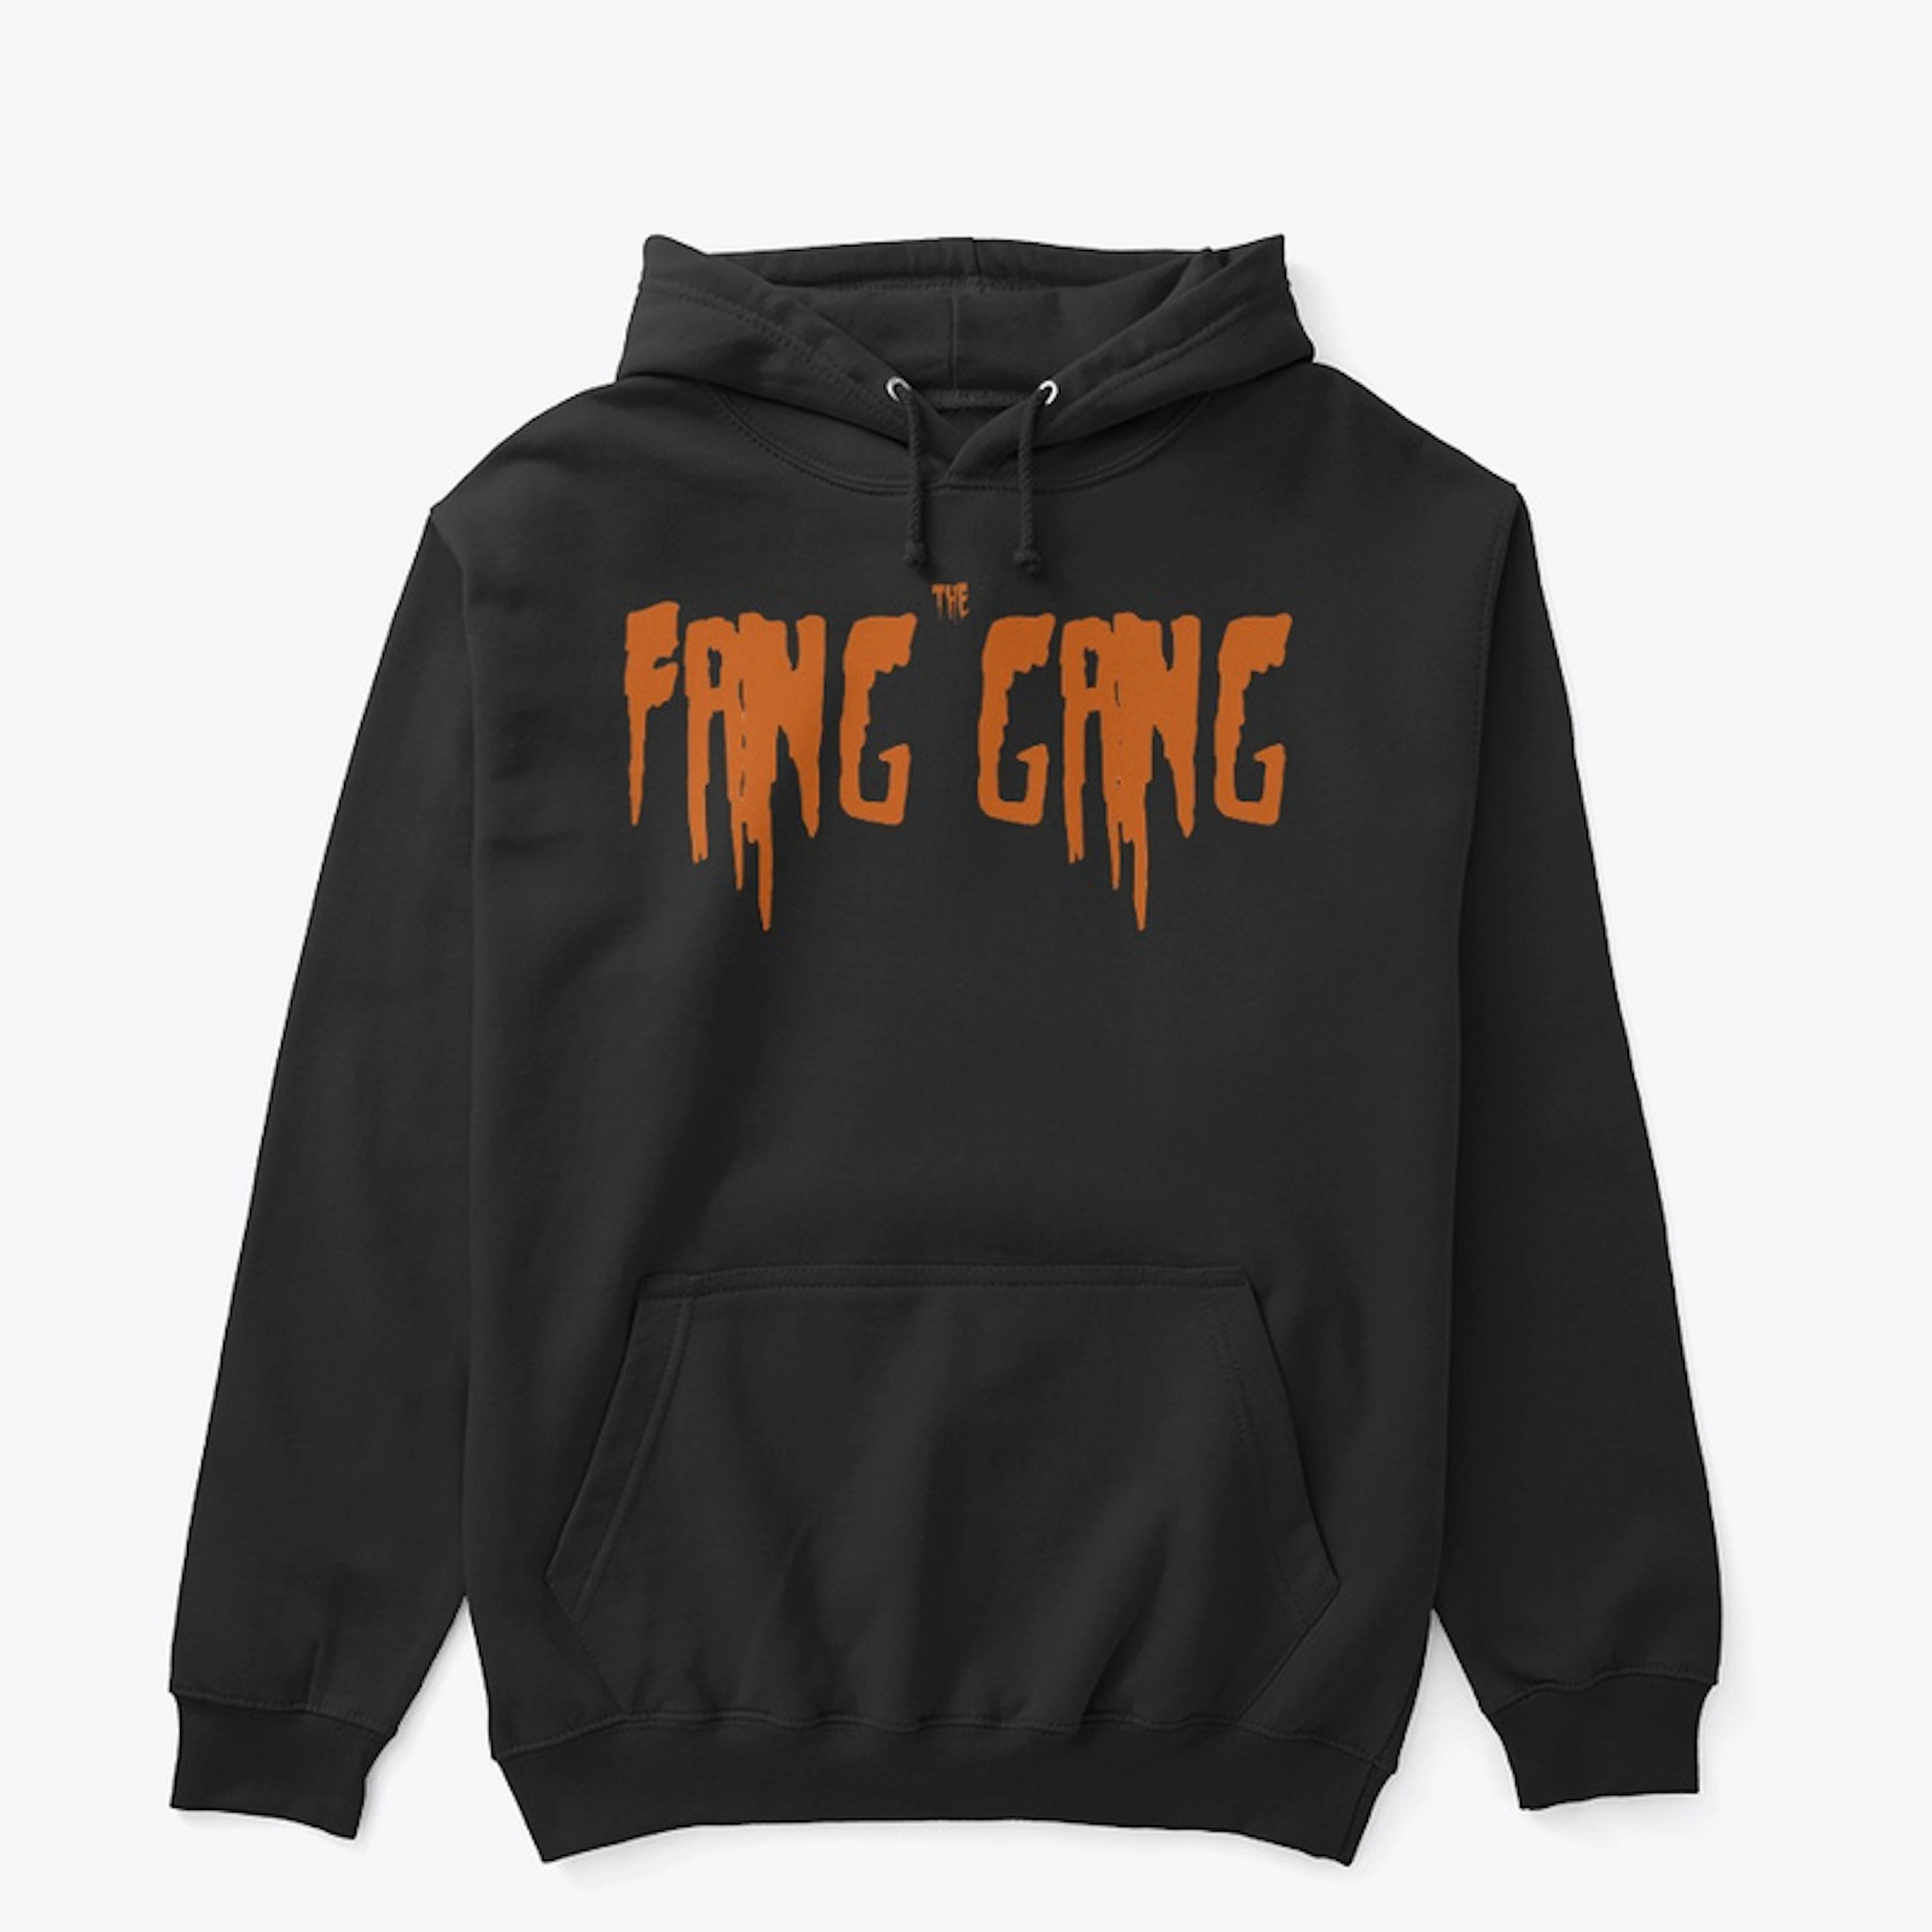 The Fang Gang